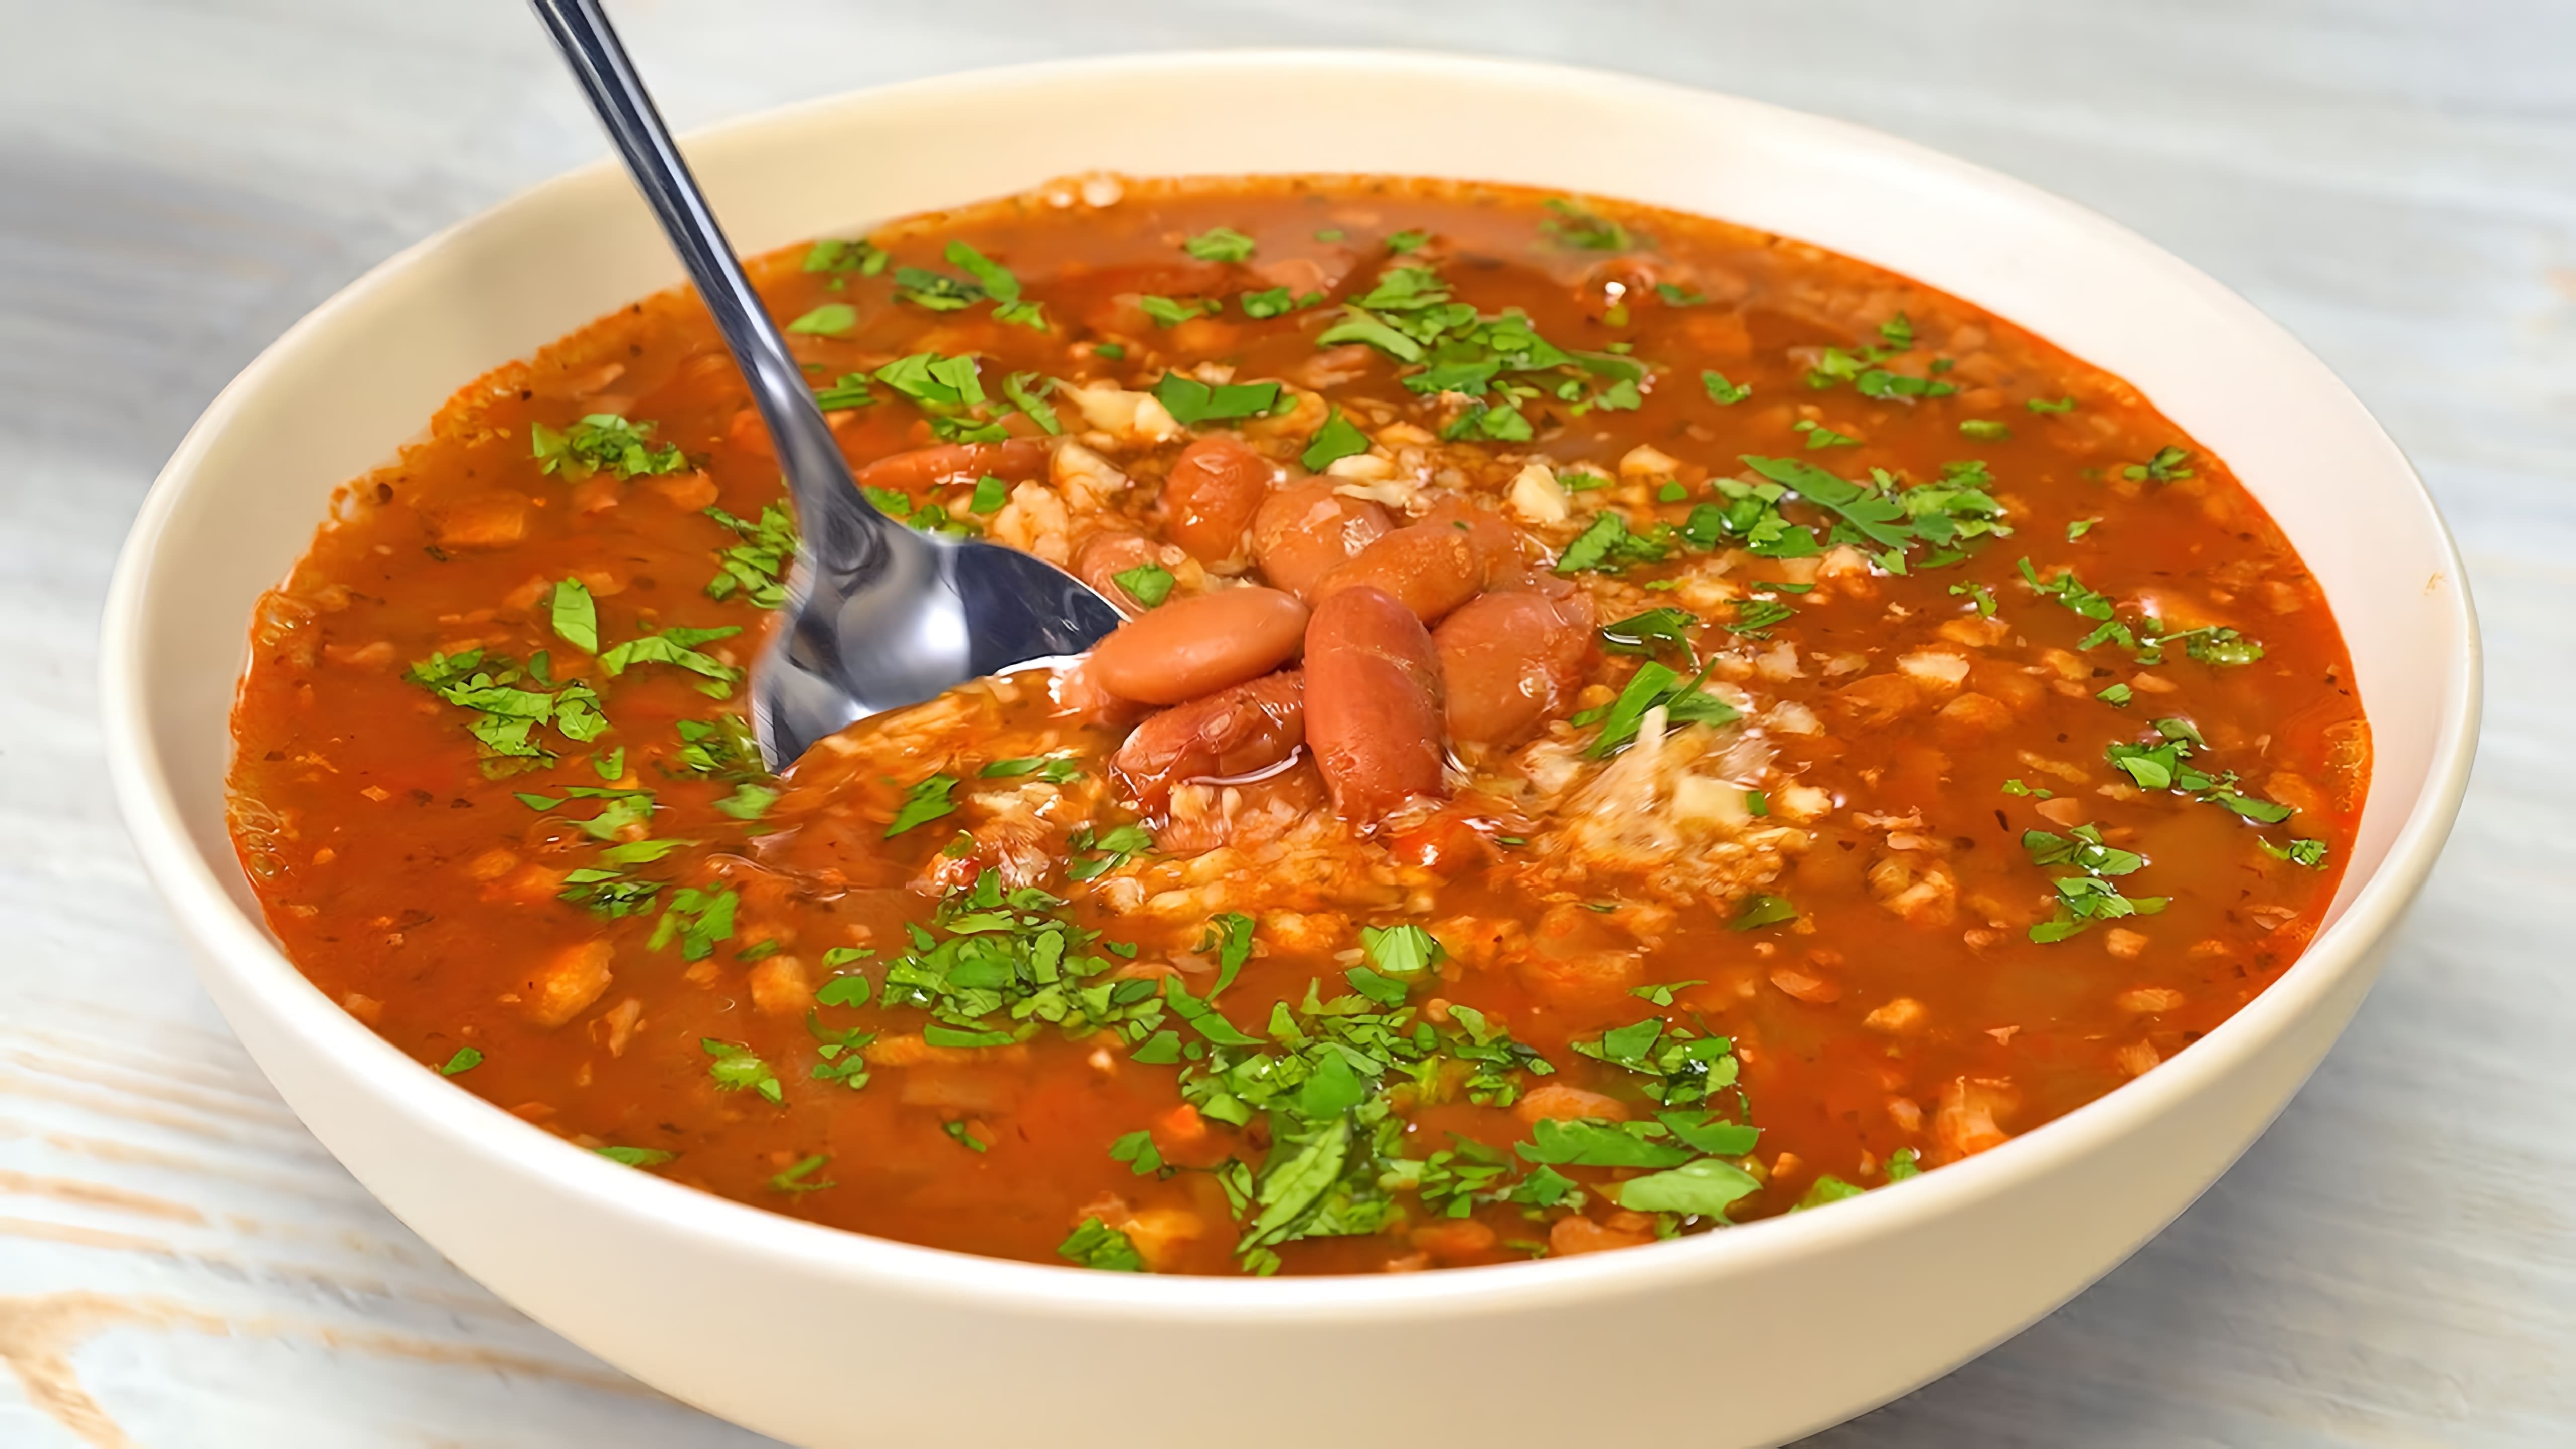 В этом видео демонстрируется рецепт приготовления армянского супа из красной фасоли - лобахашу